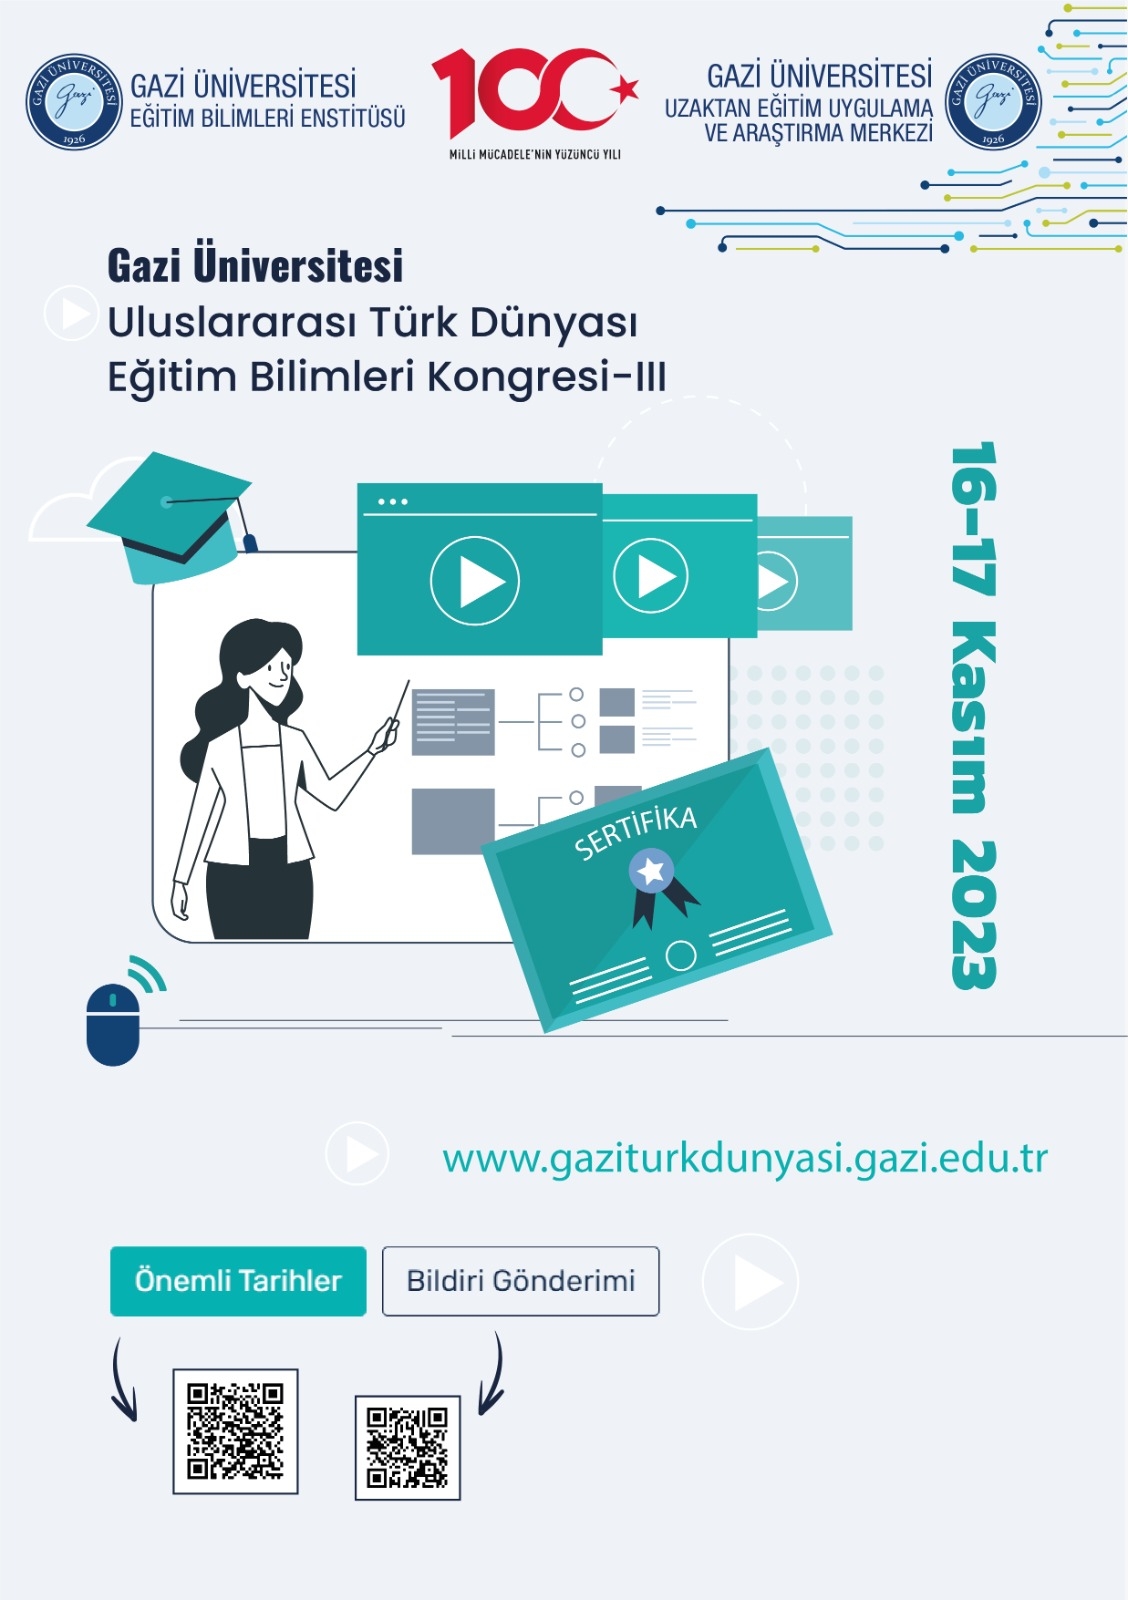 Uluslararası Türk Dünyası Eğitim Bilimleri Kongresi-III